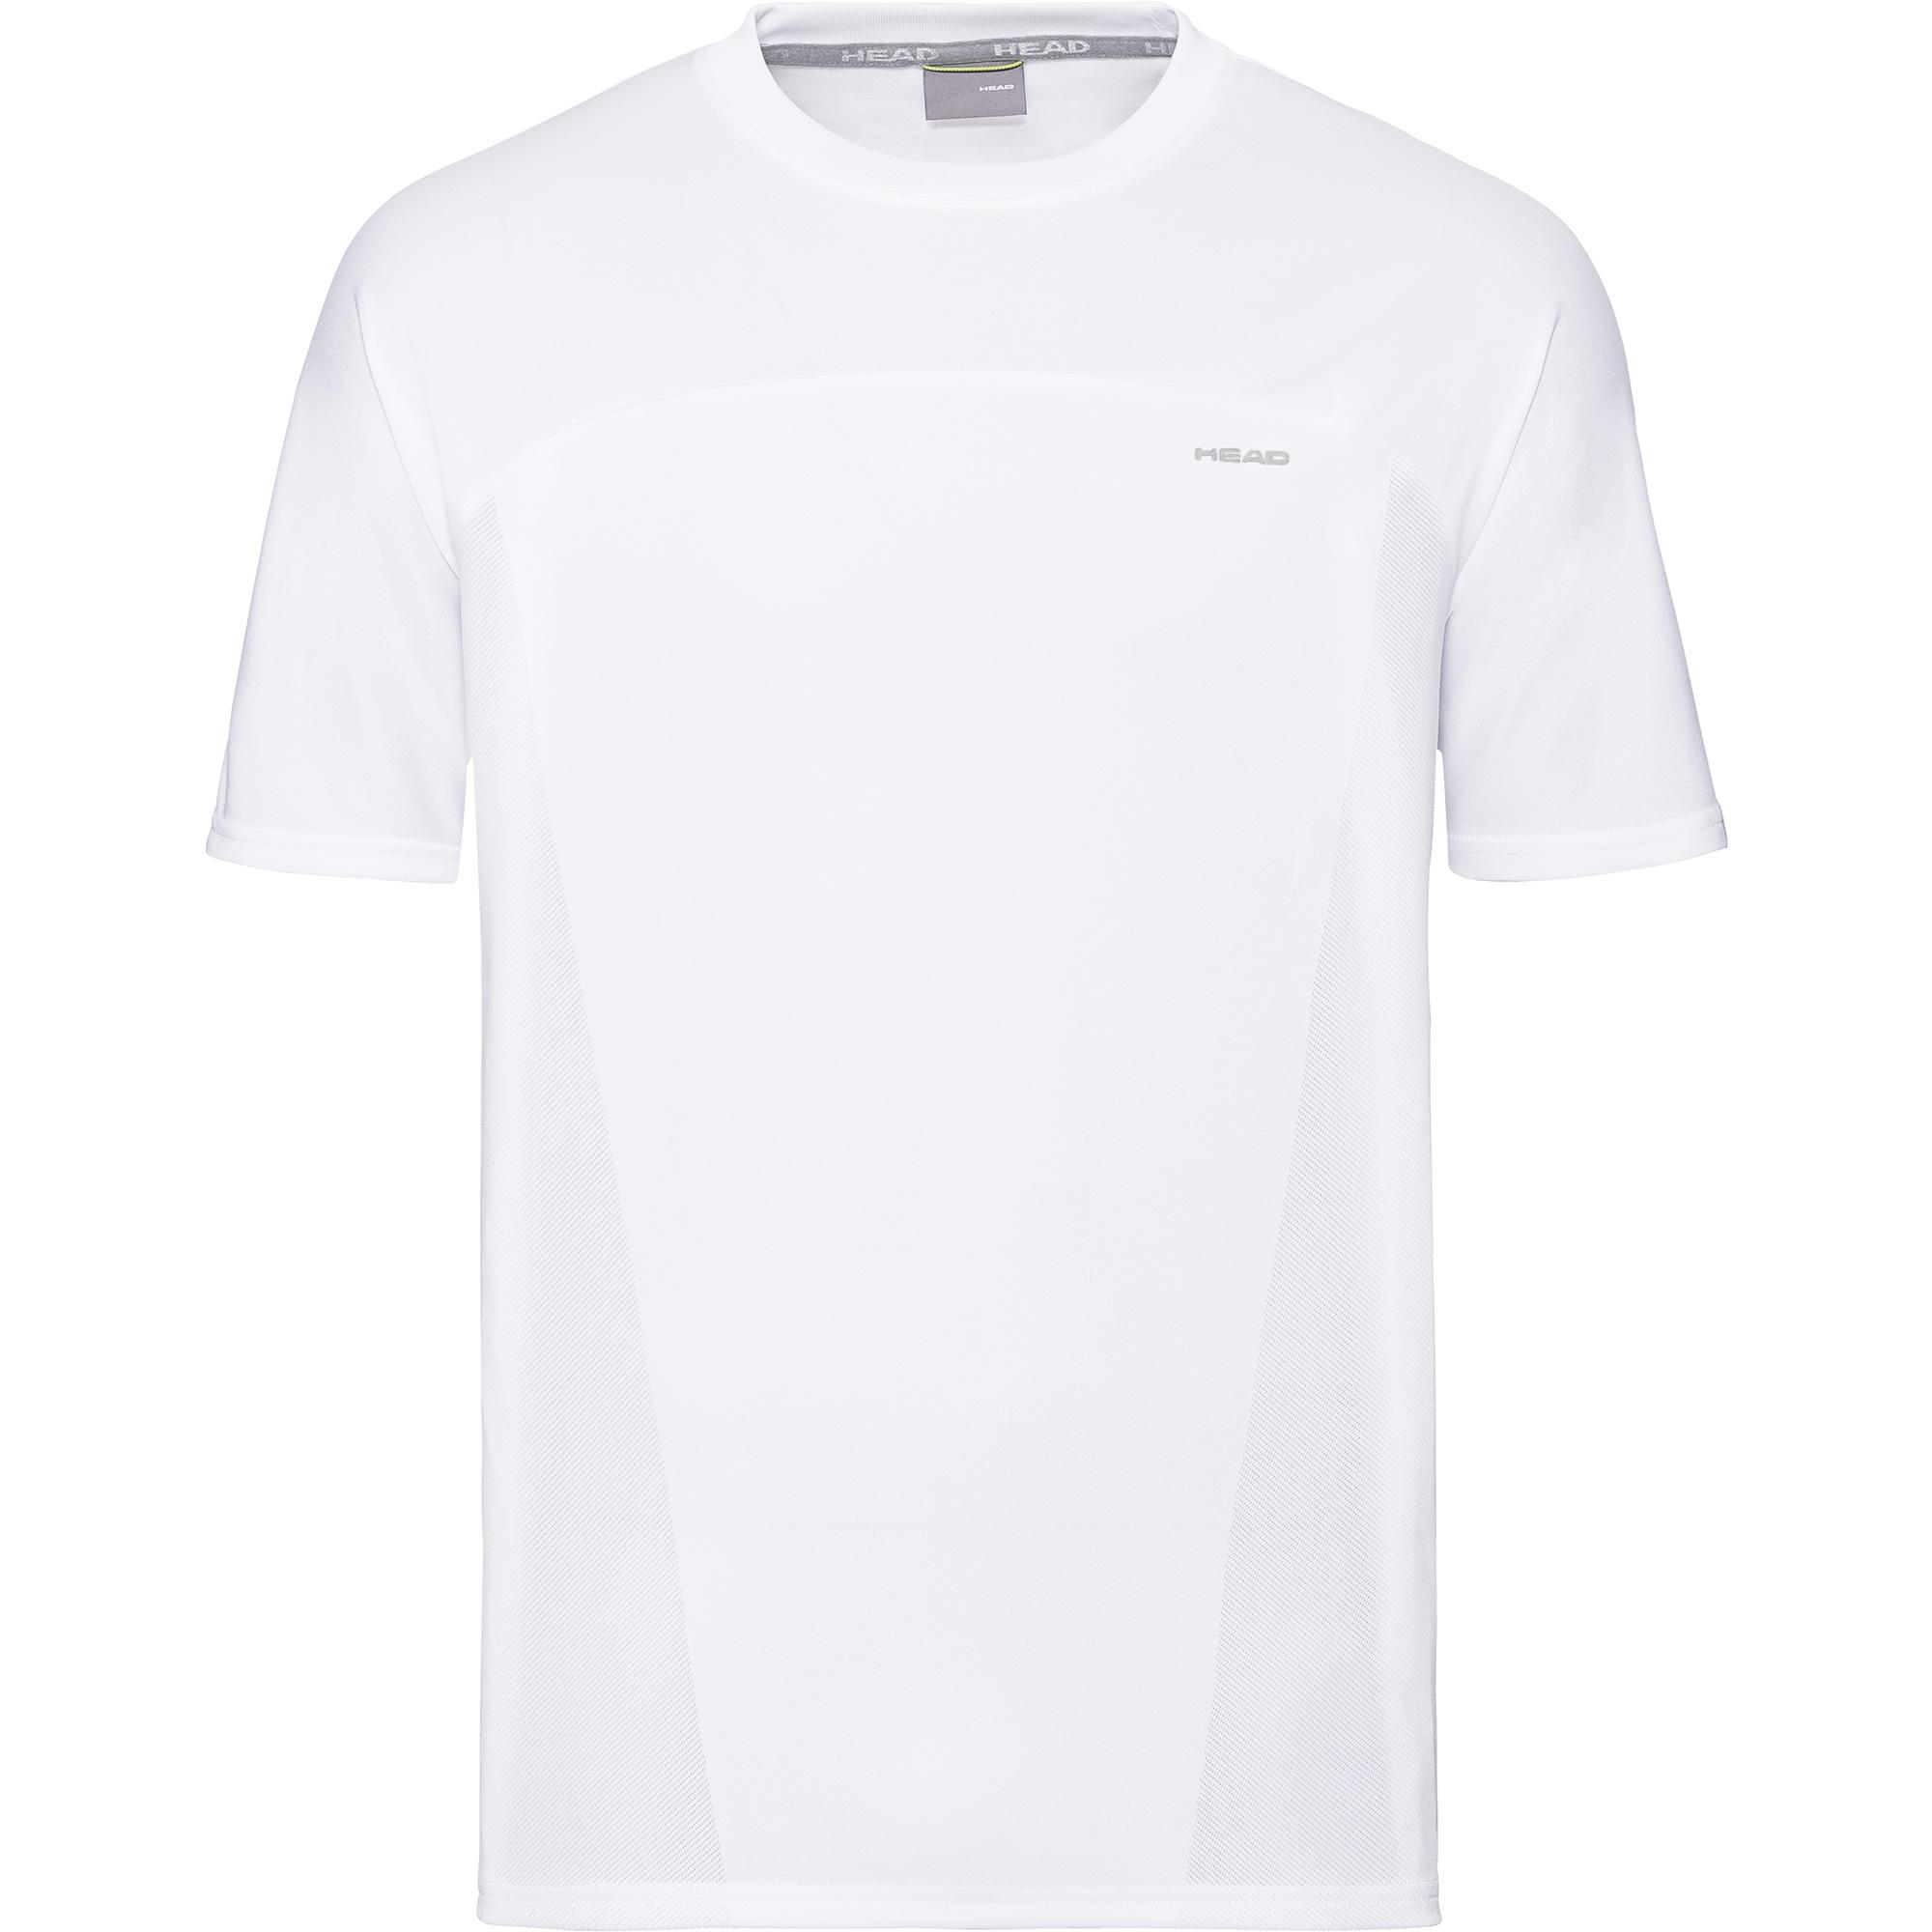 Head Mens Performance T-Shirt - White - Tennisnuts.com